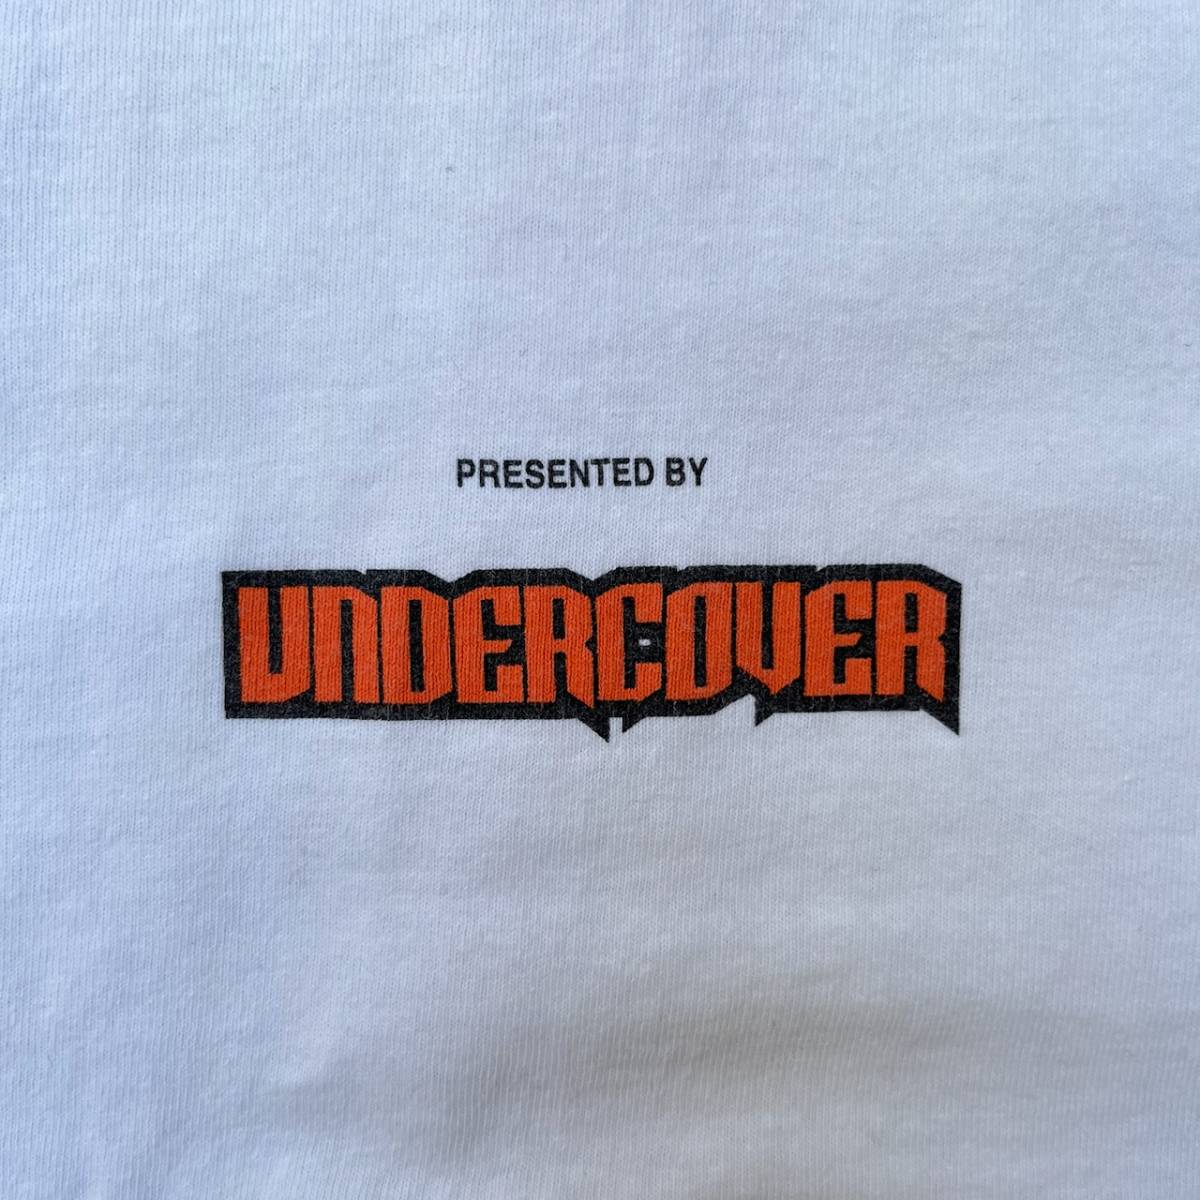 UNDER COVER アンダーカバー Mサイズ ロンドンナイト ロゴ Tシャツ プリント ホワイト